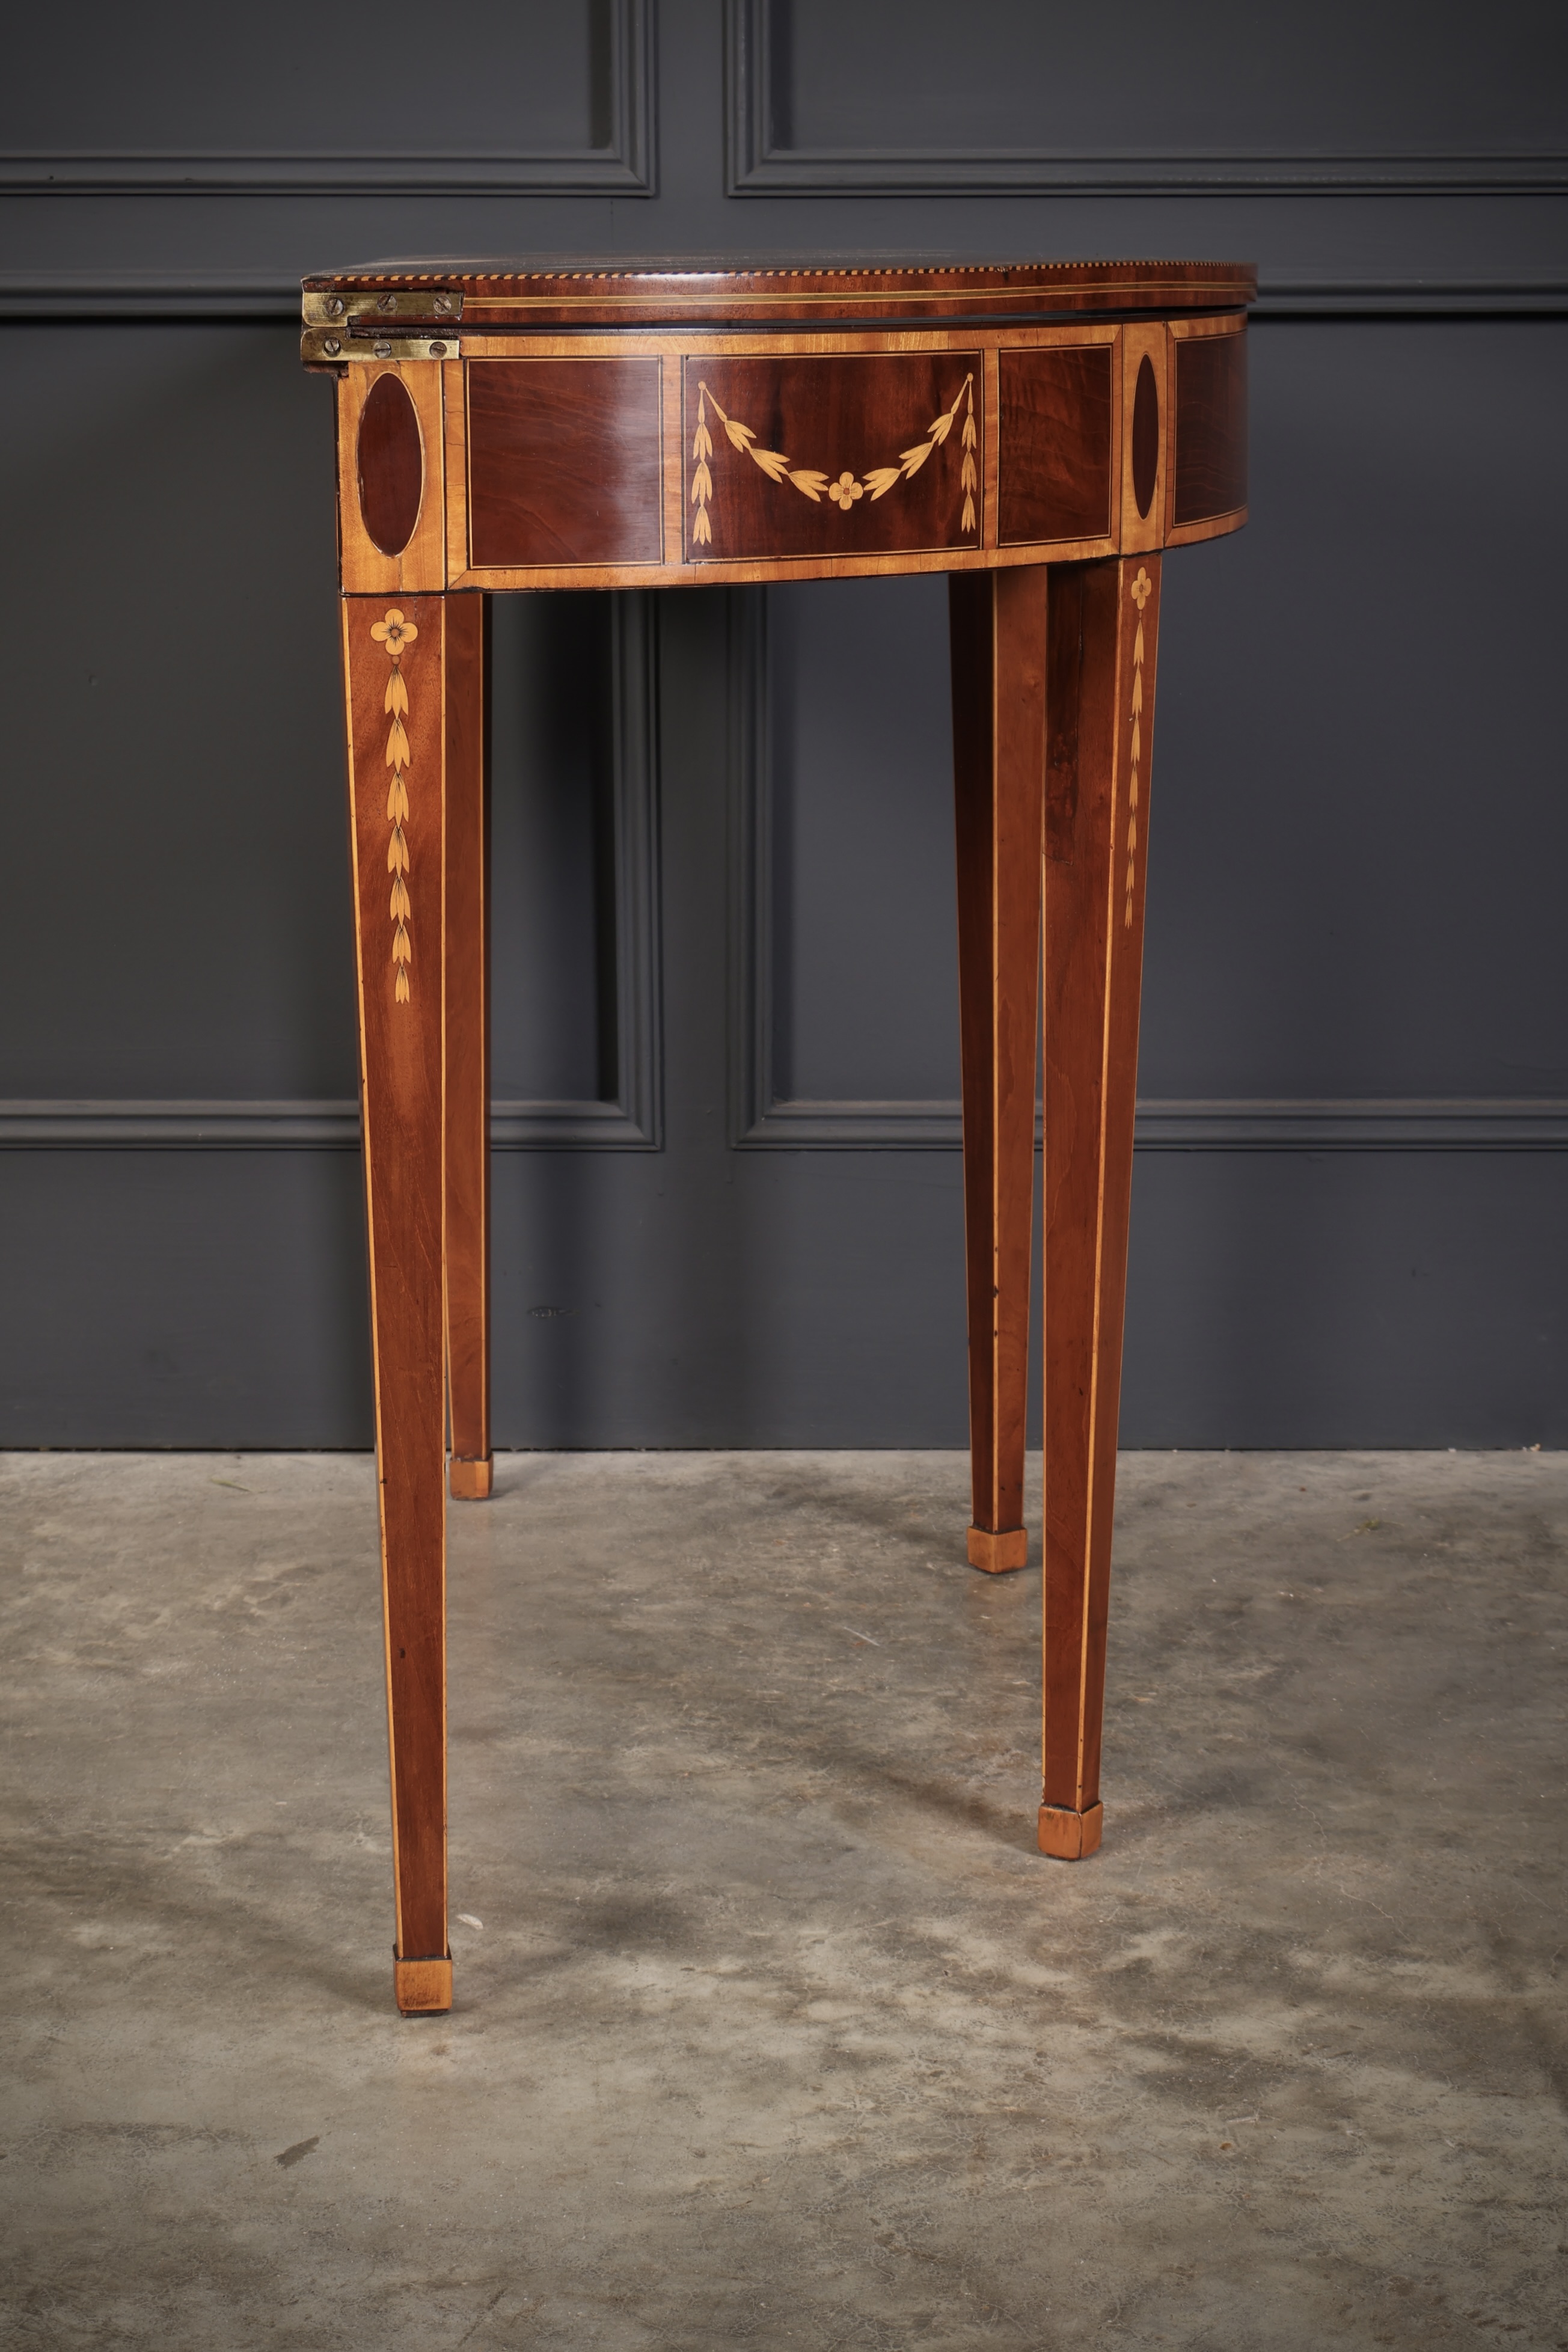 Rare 18th Century Marquetry Inlaid Tea Table 18th century Antique Furniture 14